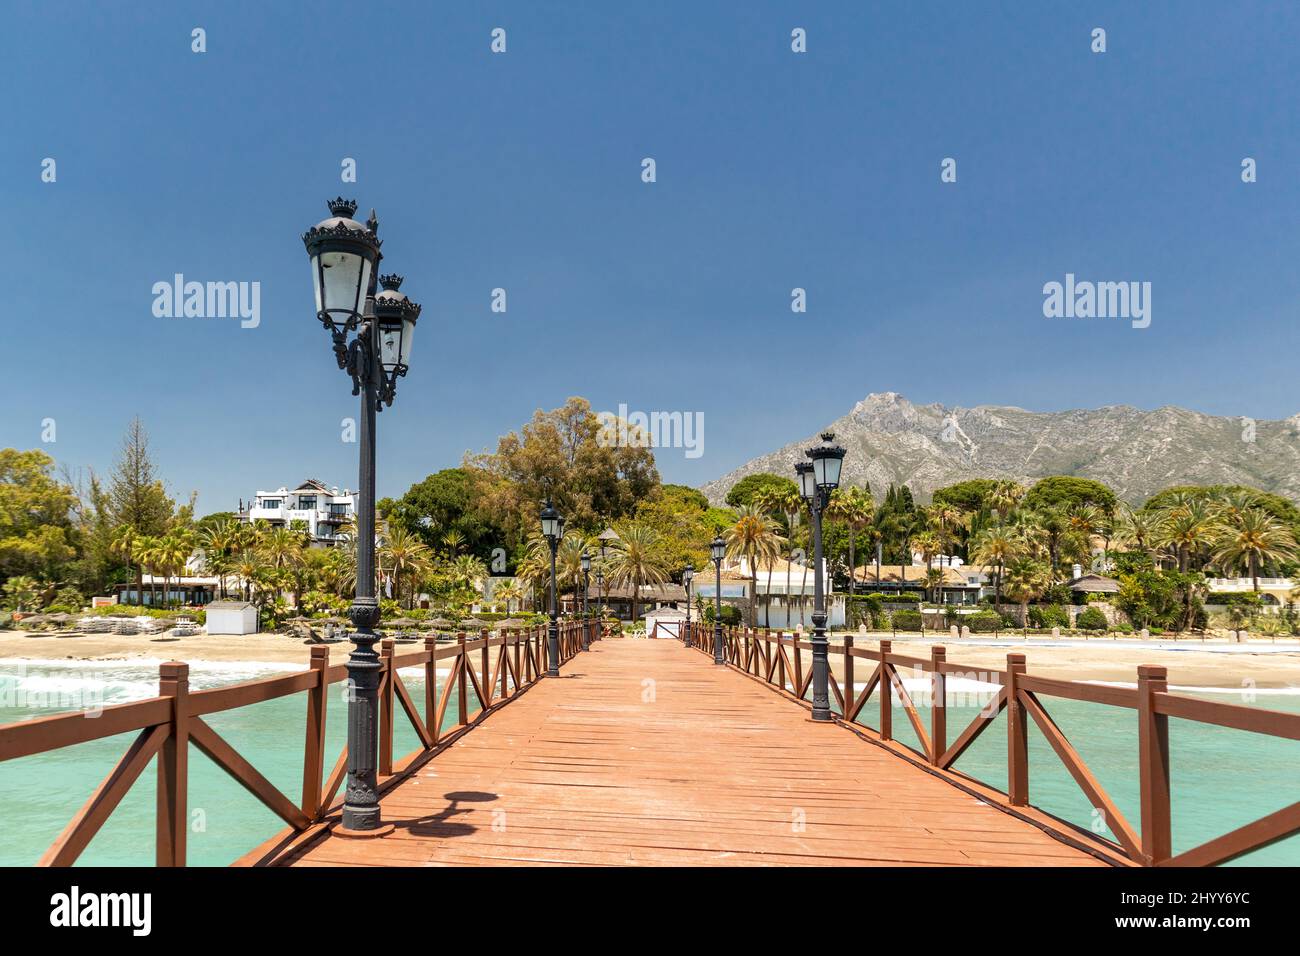 Vista sul ponte in legno rosso 'Embarcadero' a Marbella. Vista della zona di lusso Puente Romano, urbanizzazioni costose. Montagna 'la Concha'. Foto Stock